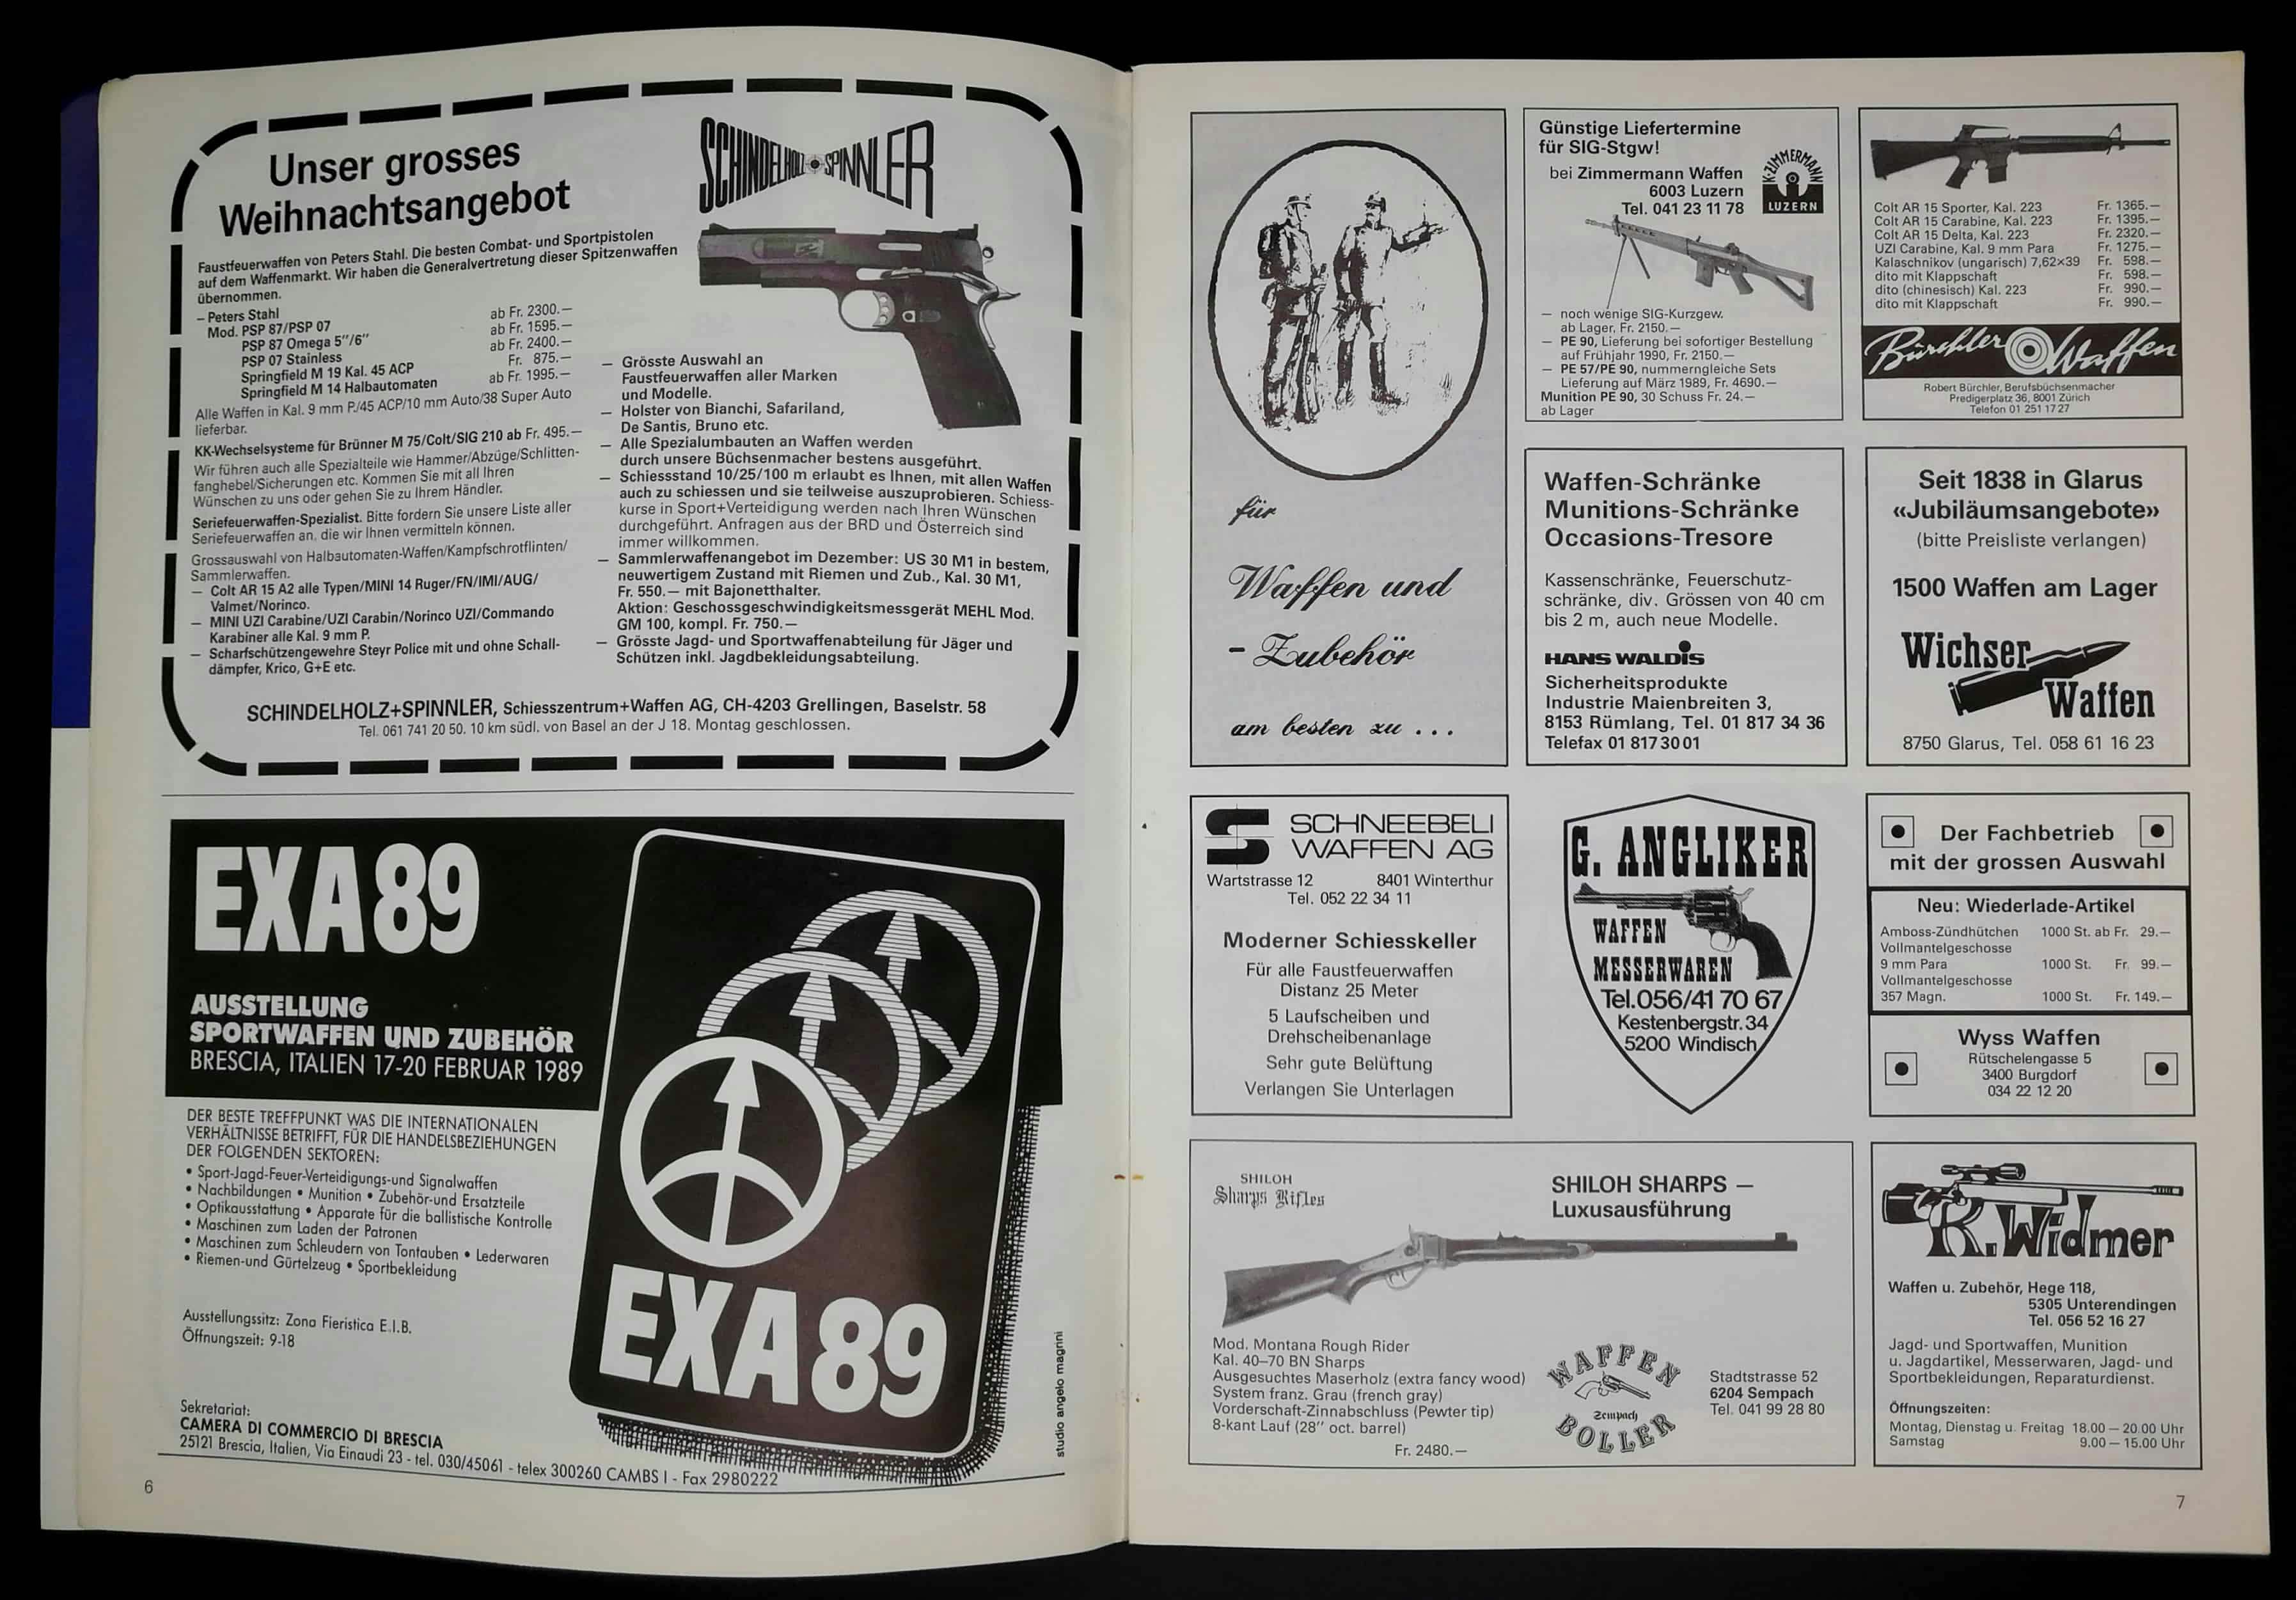 Werbung - man beachte das Inserat von Zimmermann Waffen rechts oben Mitte. Nummerngleiches PE 57 und PE 90 Für knapp 4700 Franken!